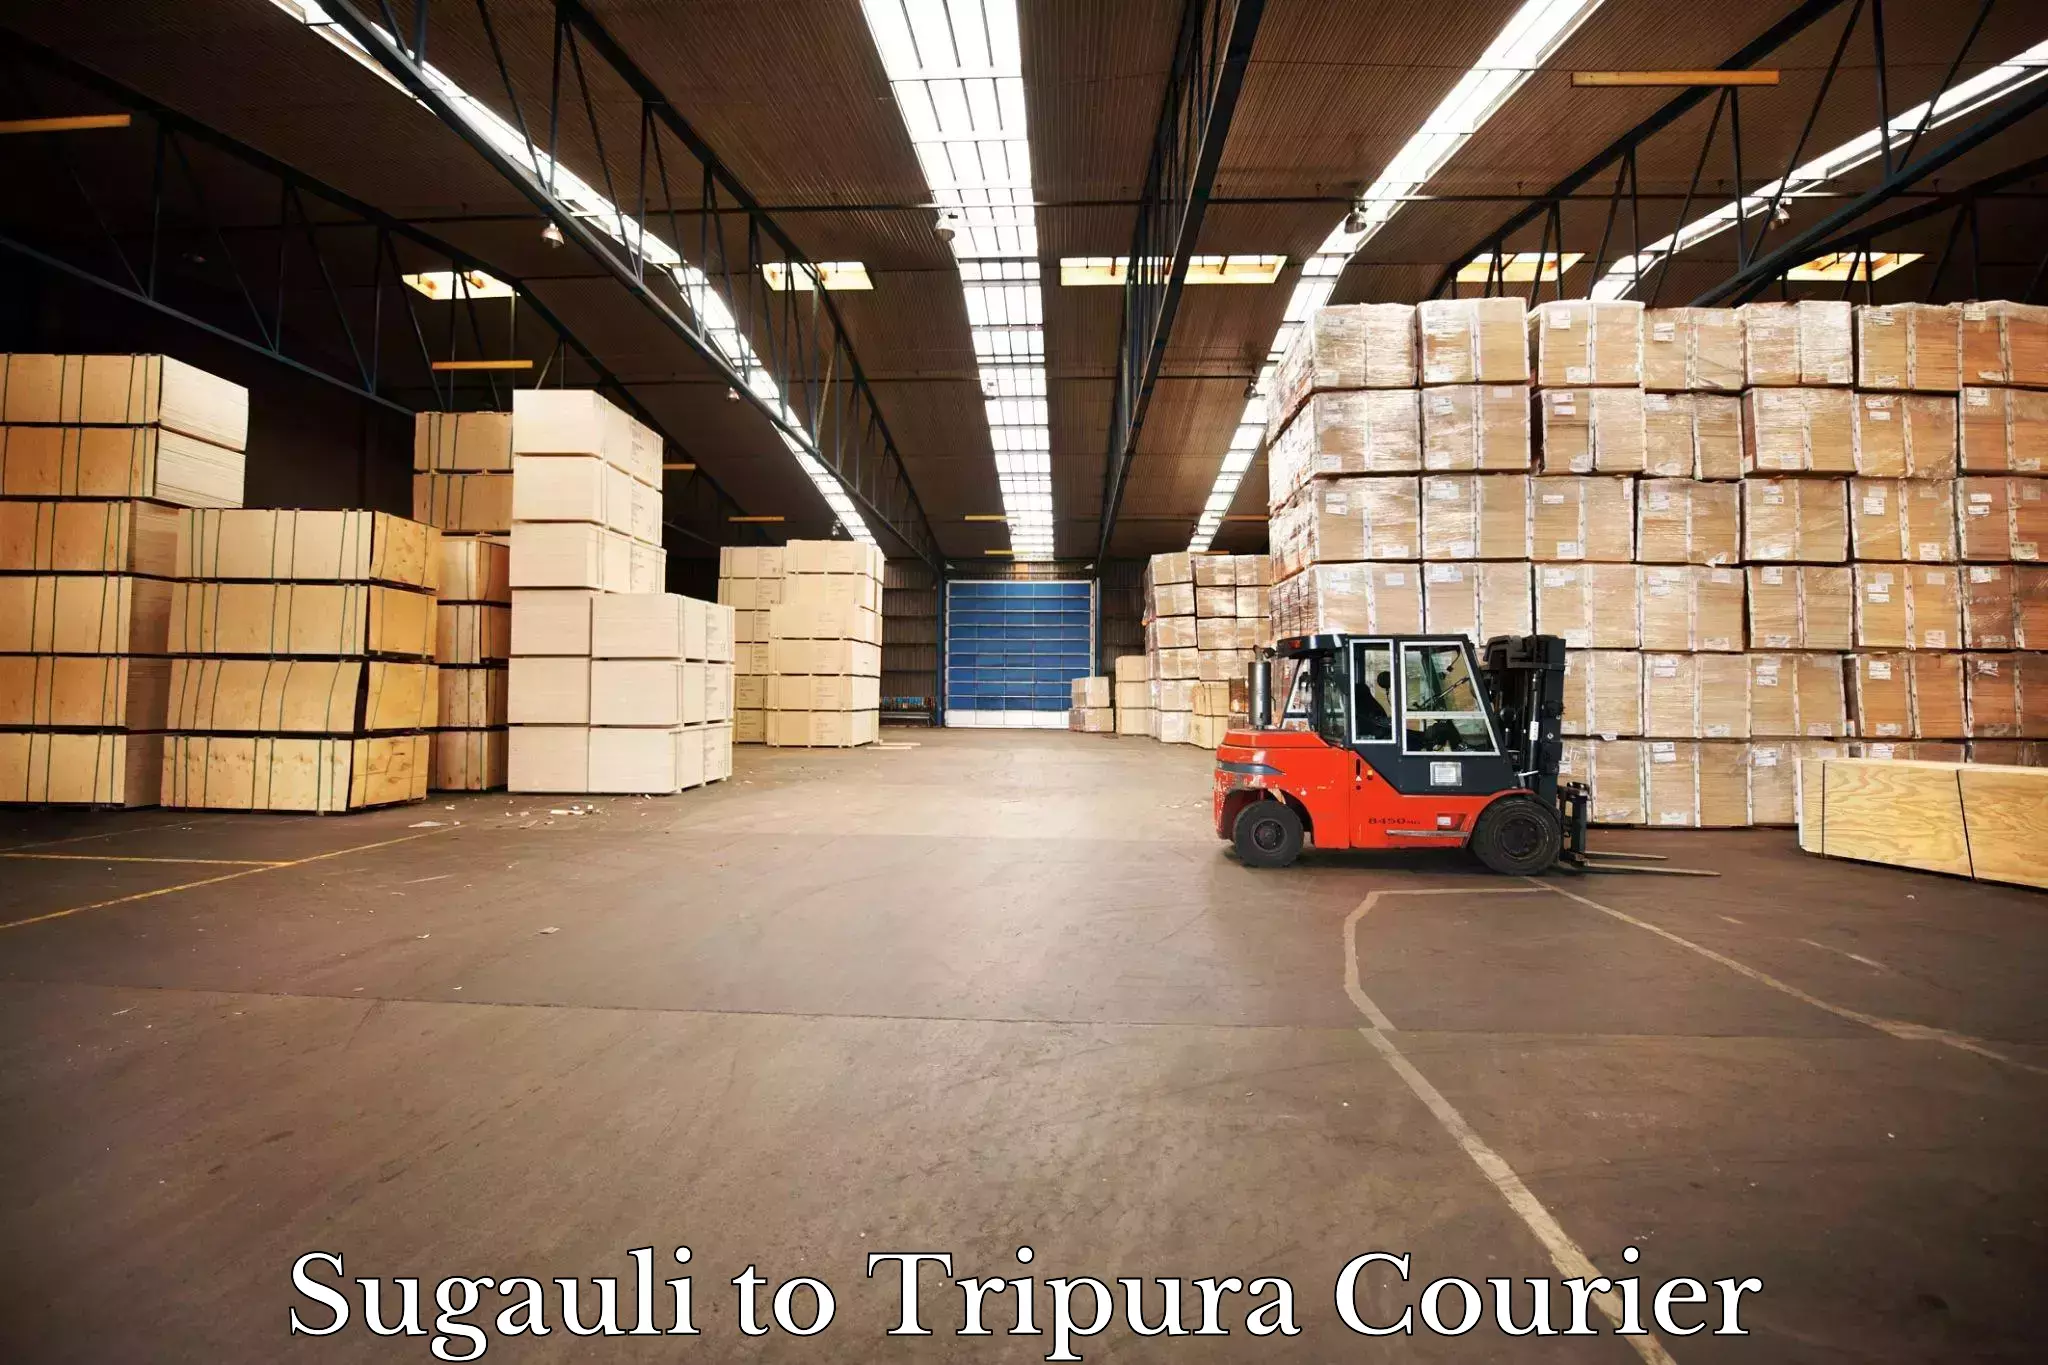 Courier service comparison Sugauli to Tripura